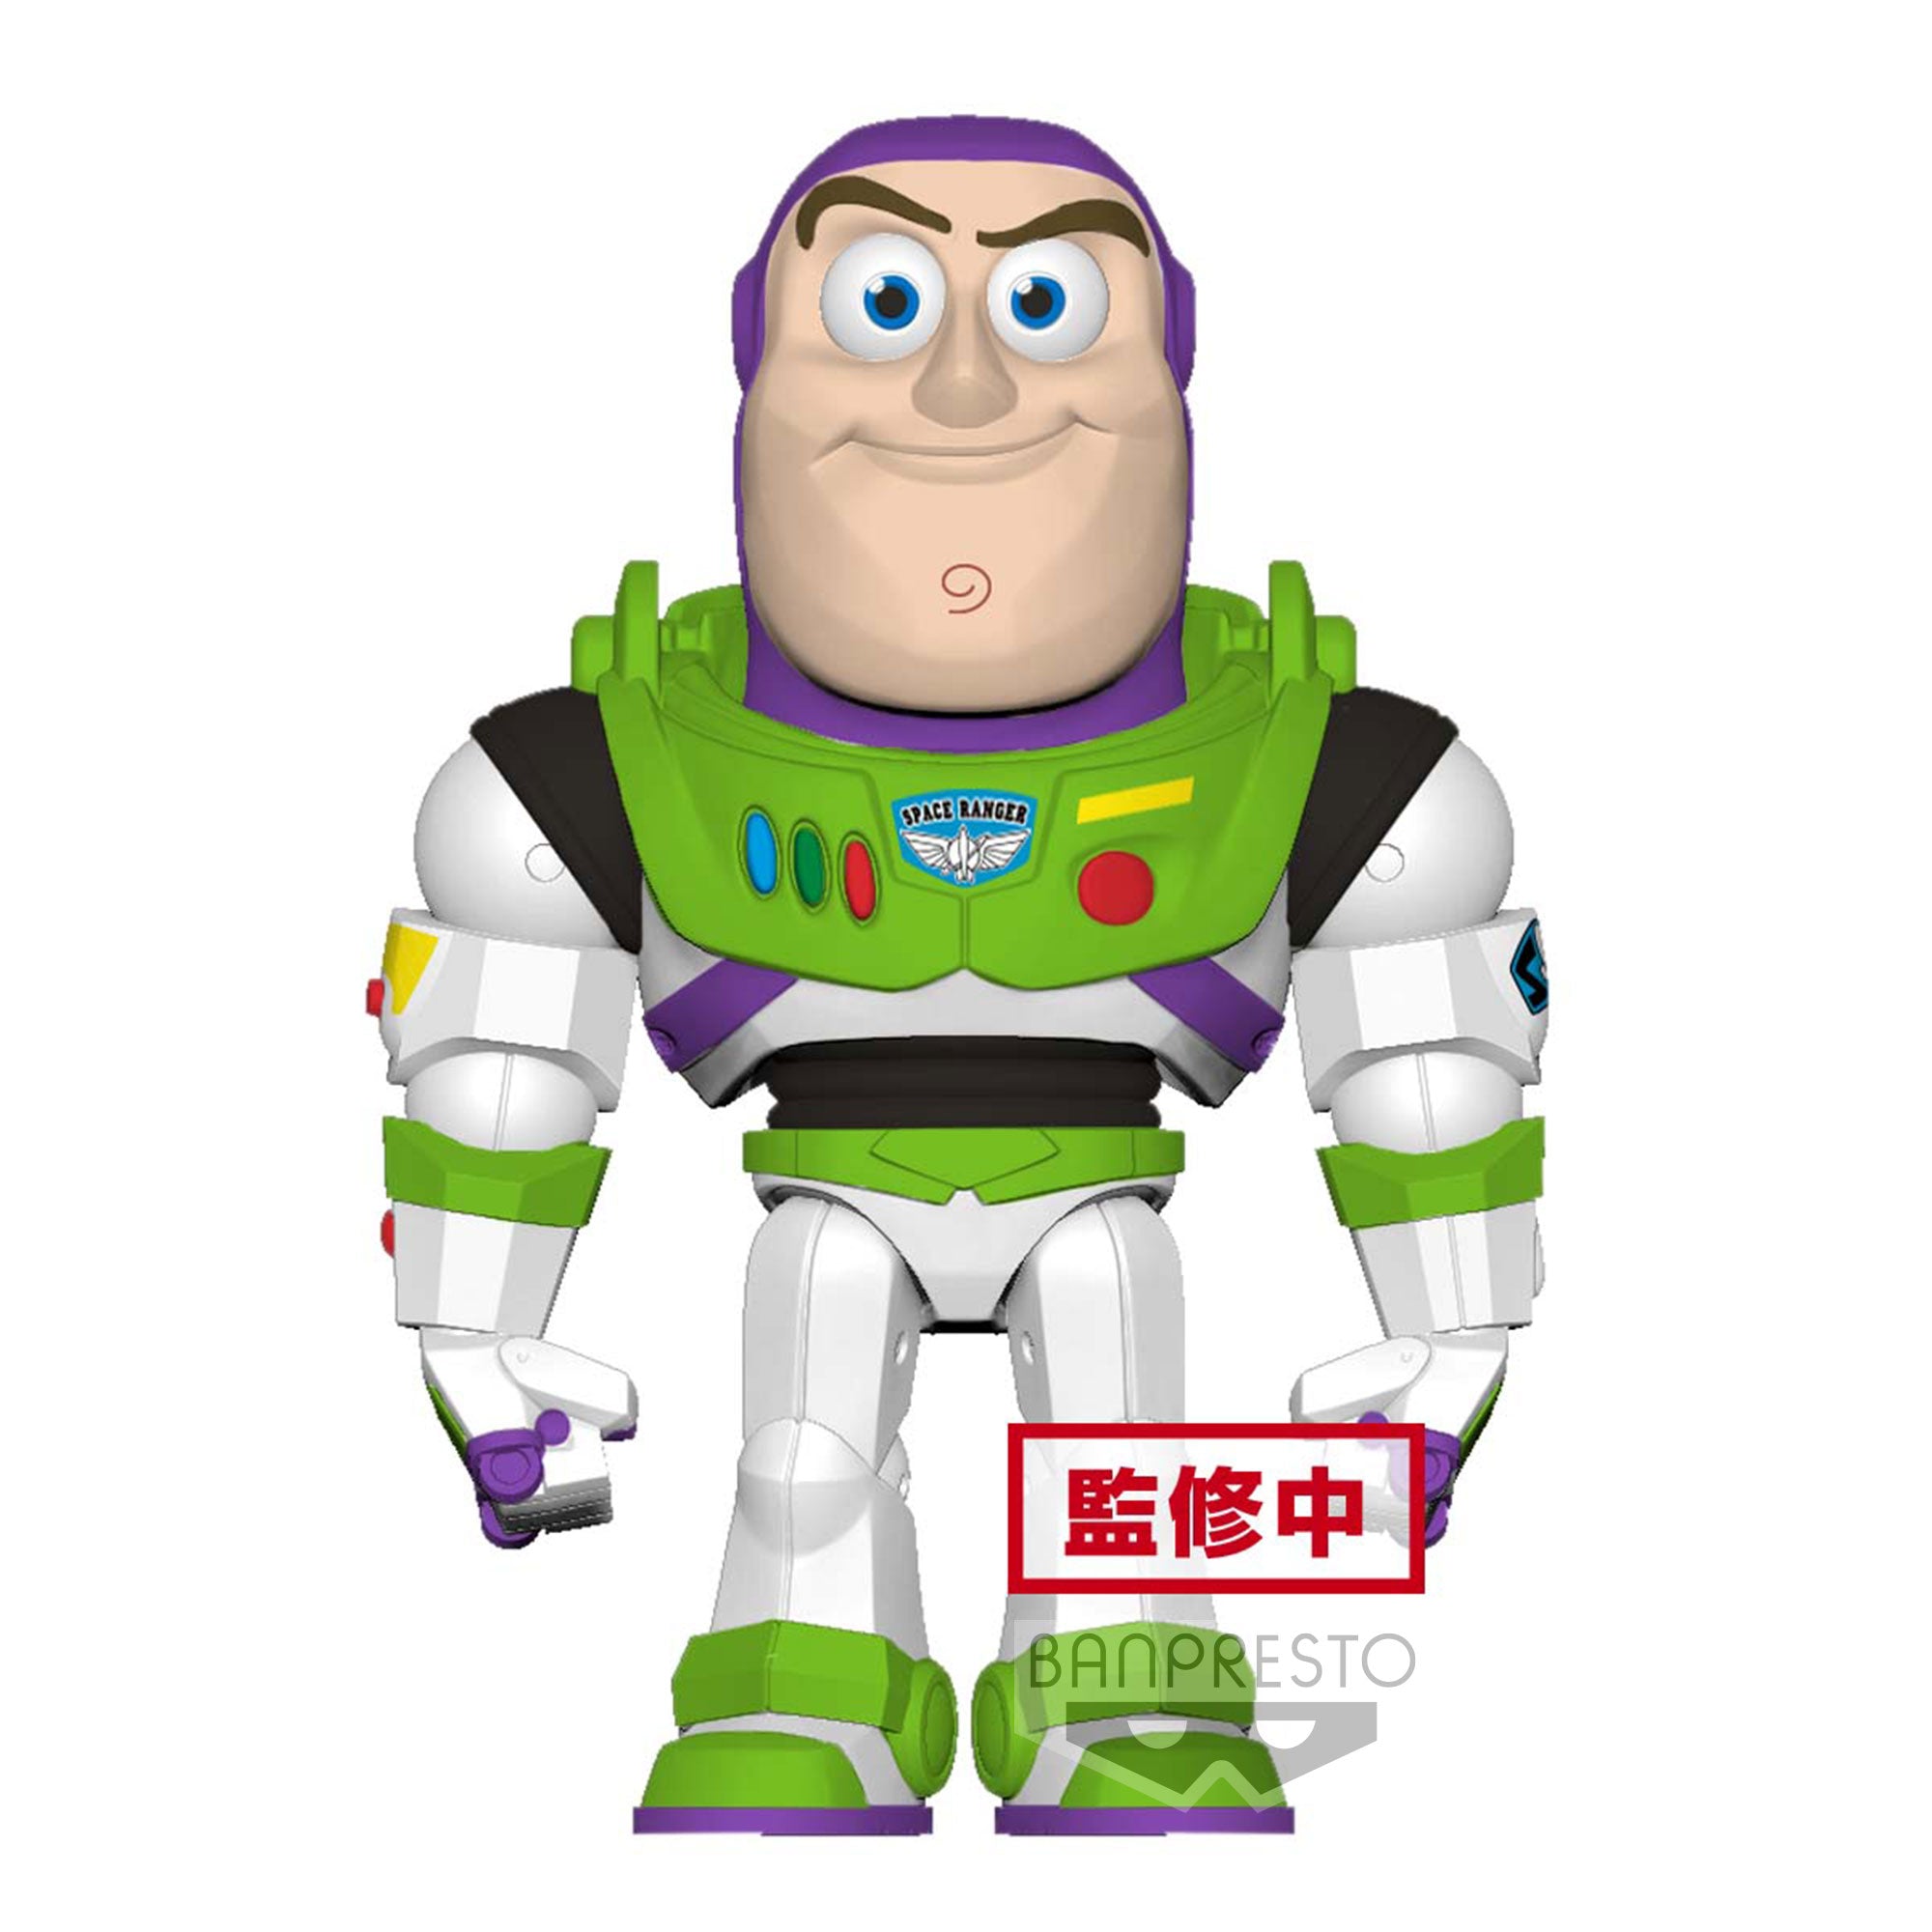 Banpresto Poligoroid Toy Story - Buzz Lightyear